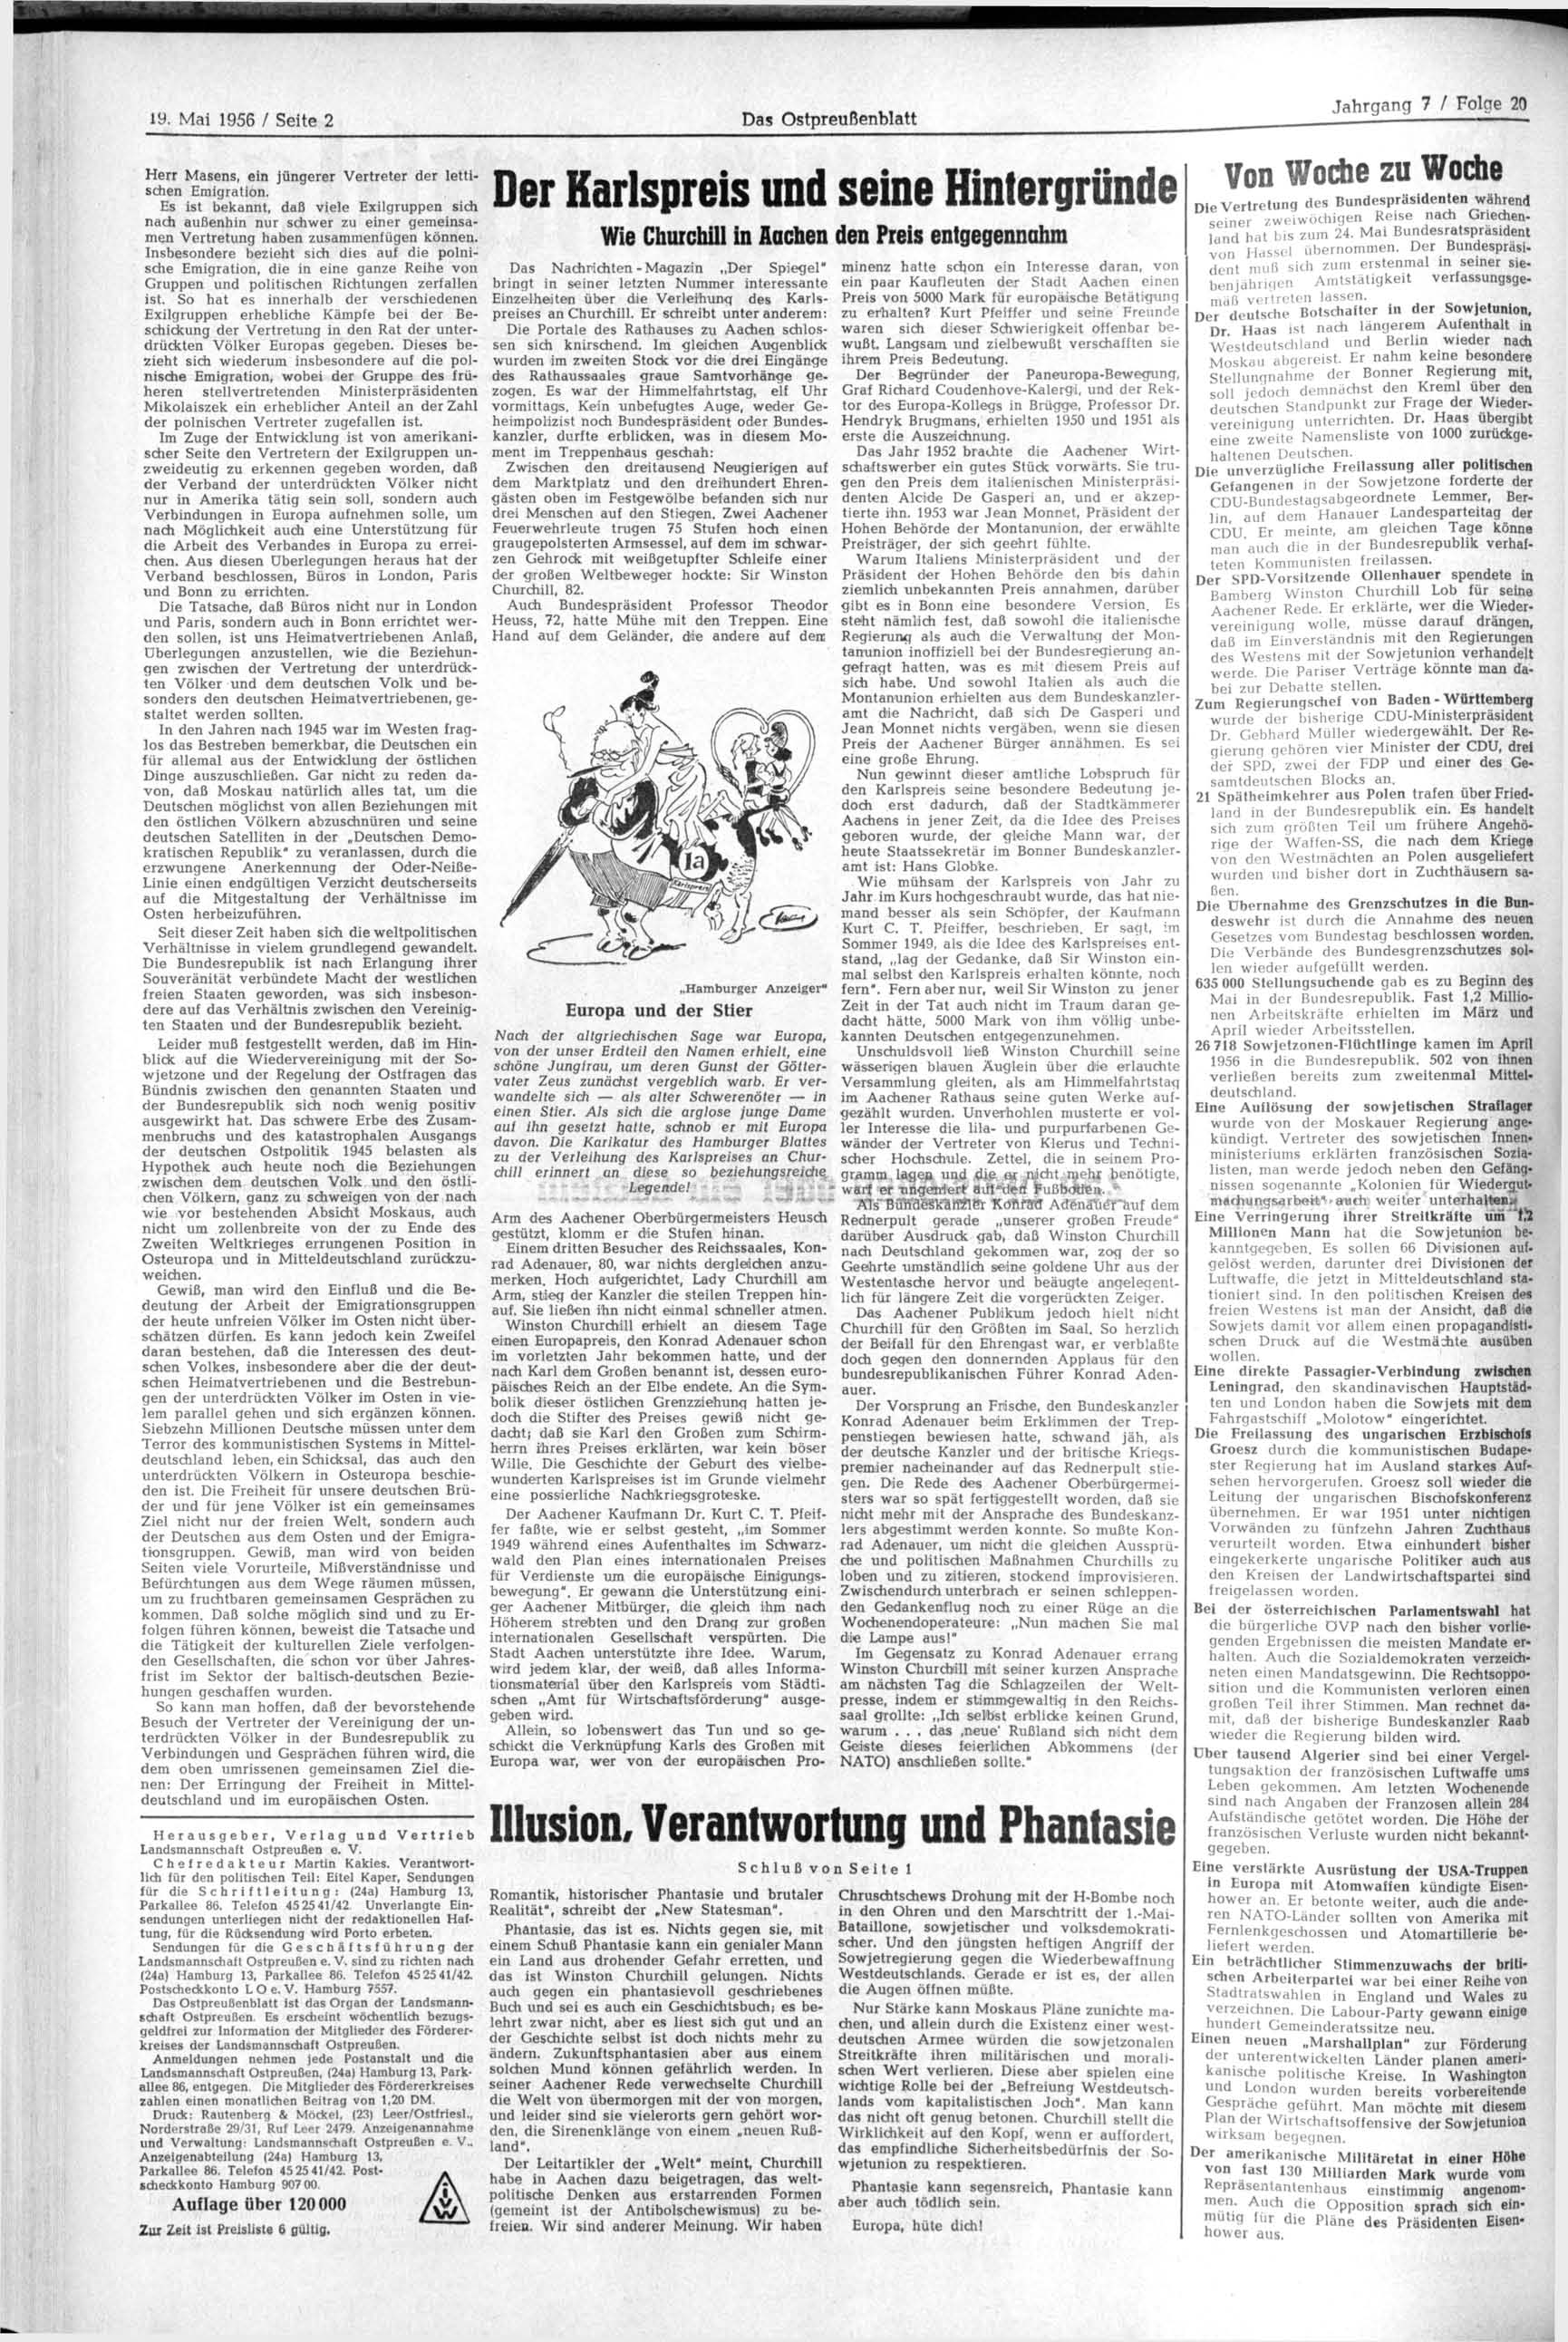 19. Mai 1956 / Seite 2 Das Ostpreußenblatt Herr Masens, ein jüngerer Vertreter der lettischen Emigration.